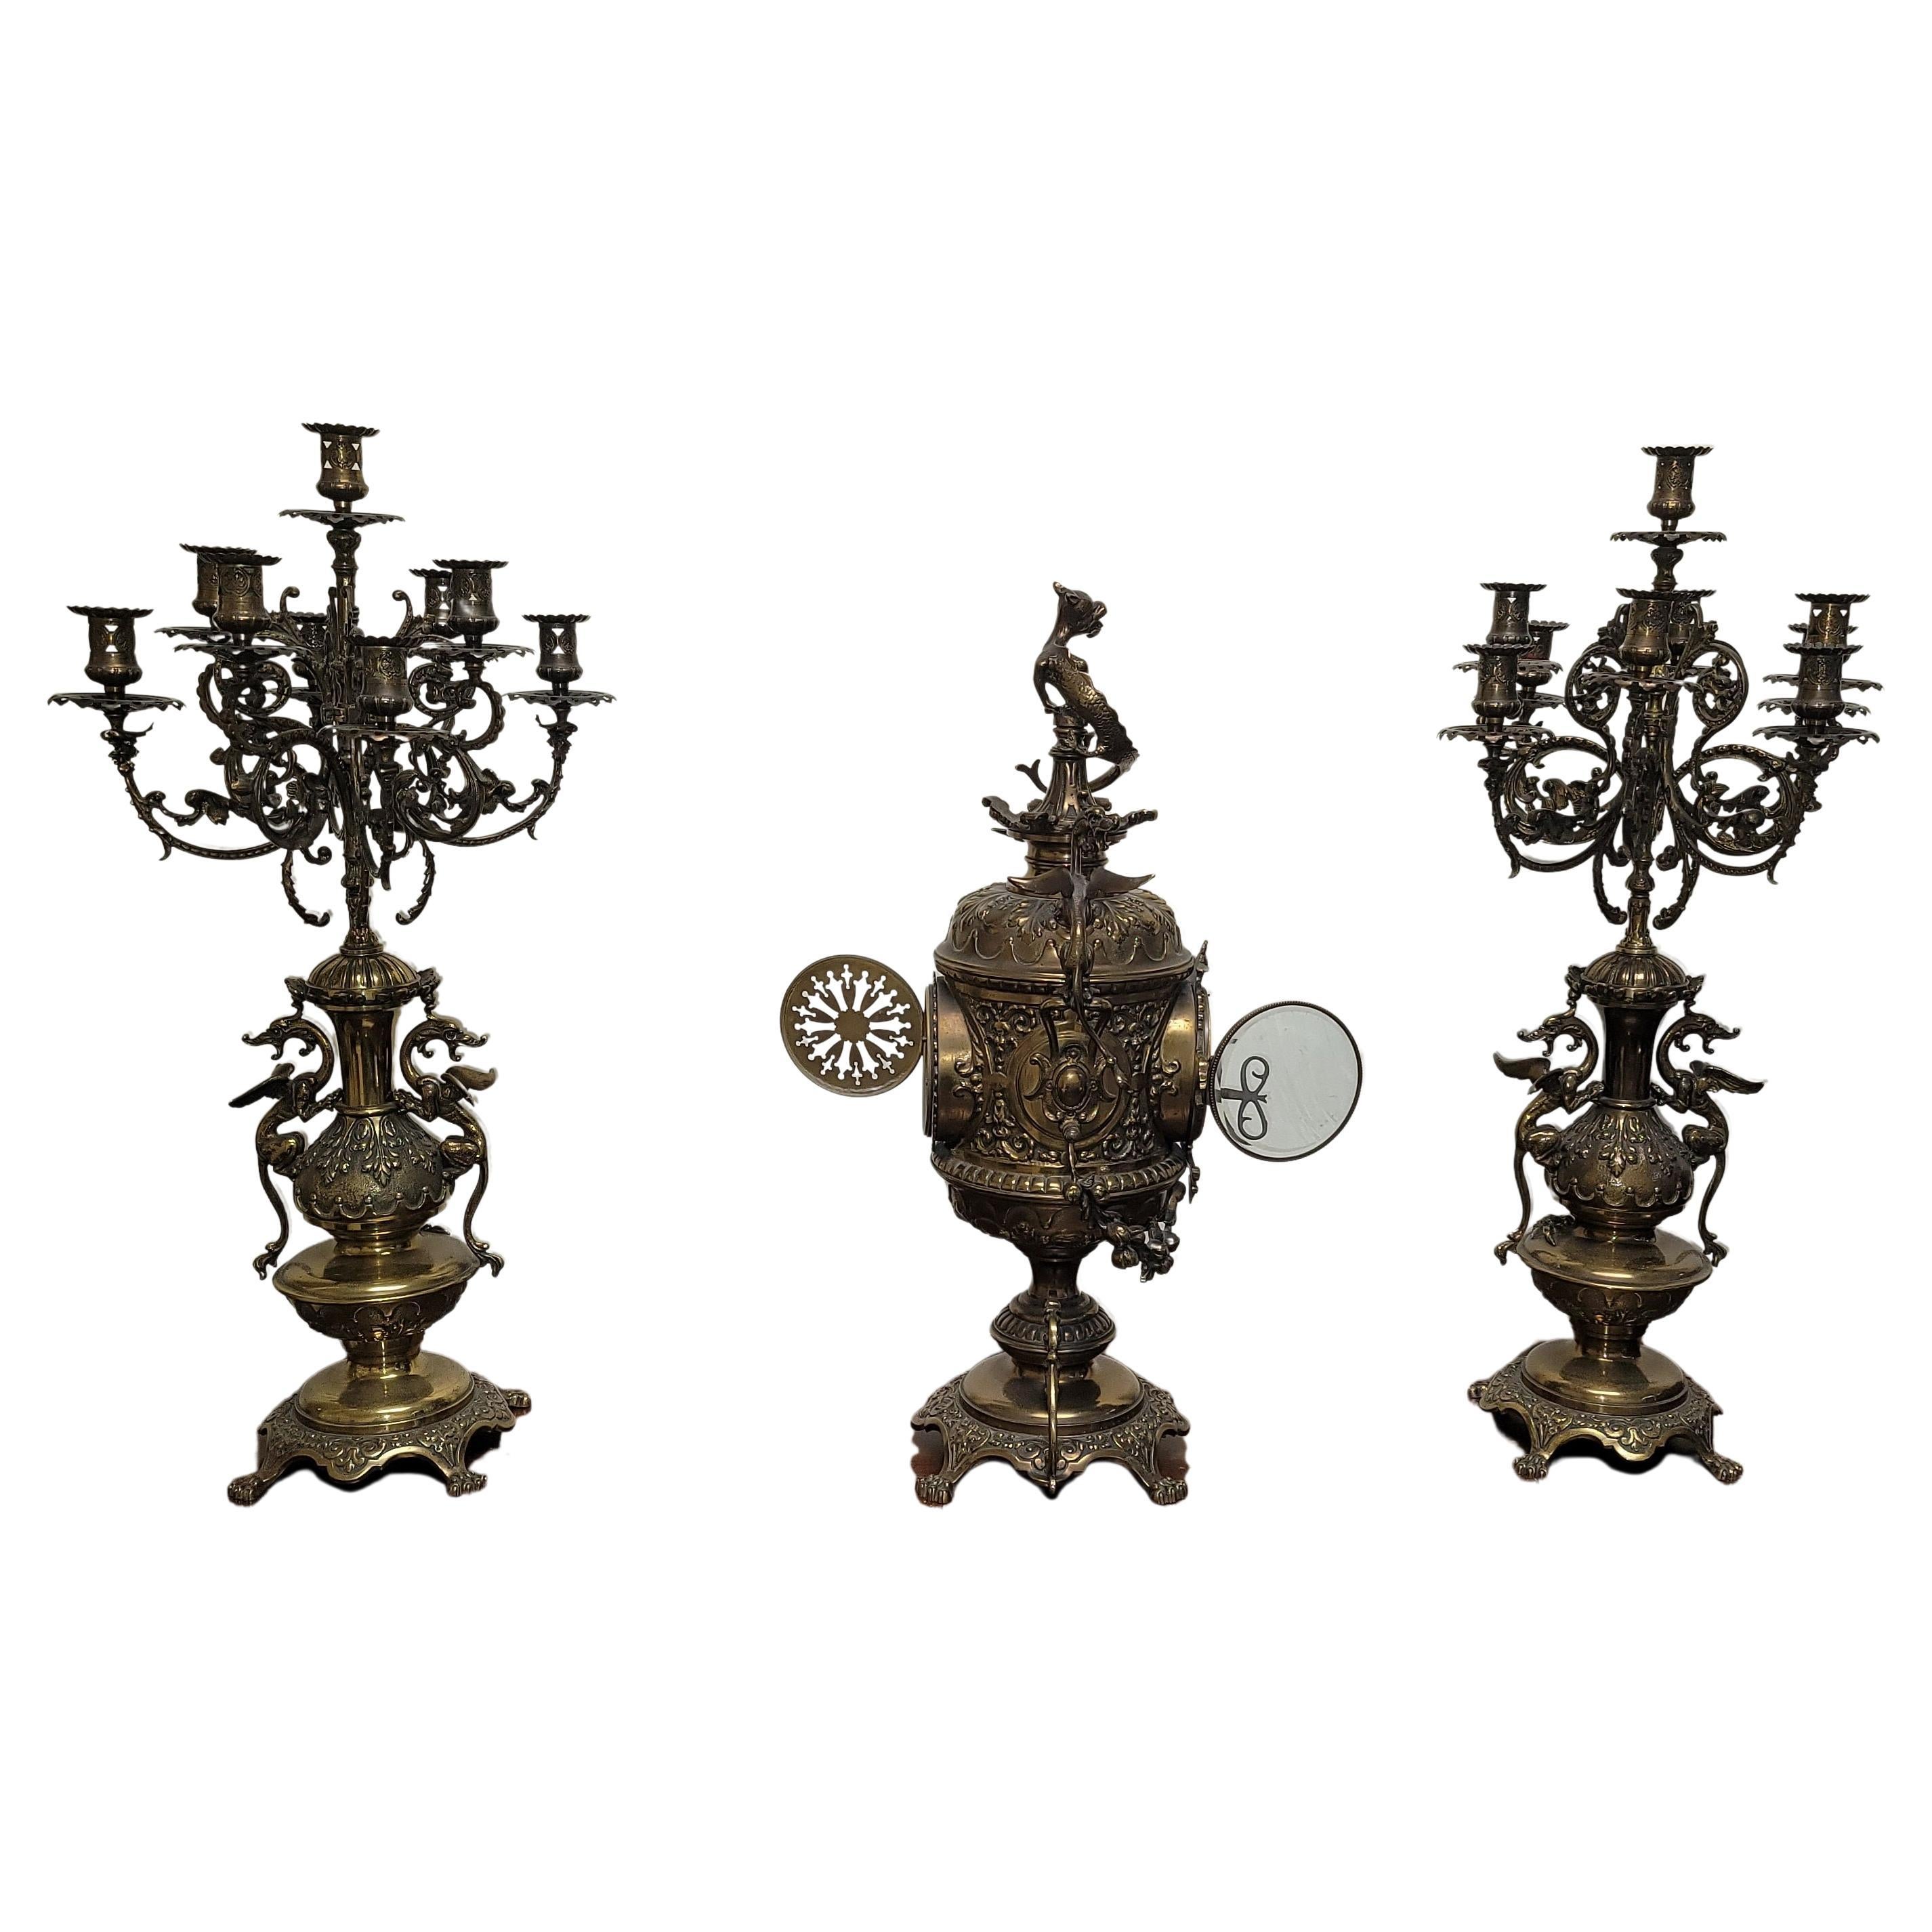 Ensemble de trois chandeliers et d'une horloge en métal doré de style Empire belge Belle Epoque, d'inspiration asiatique. 
Ils mesurent 11